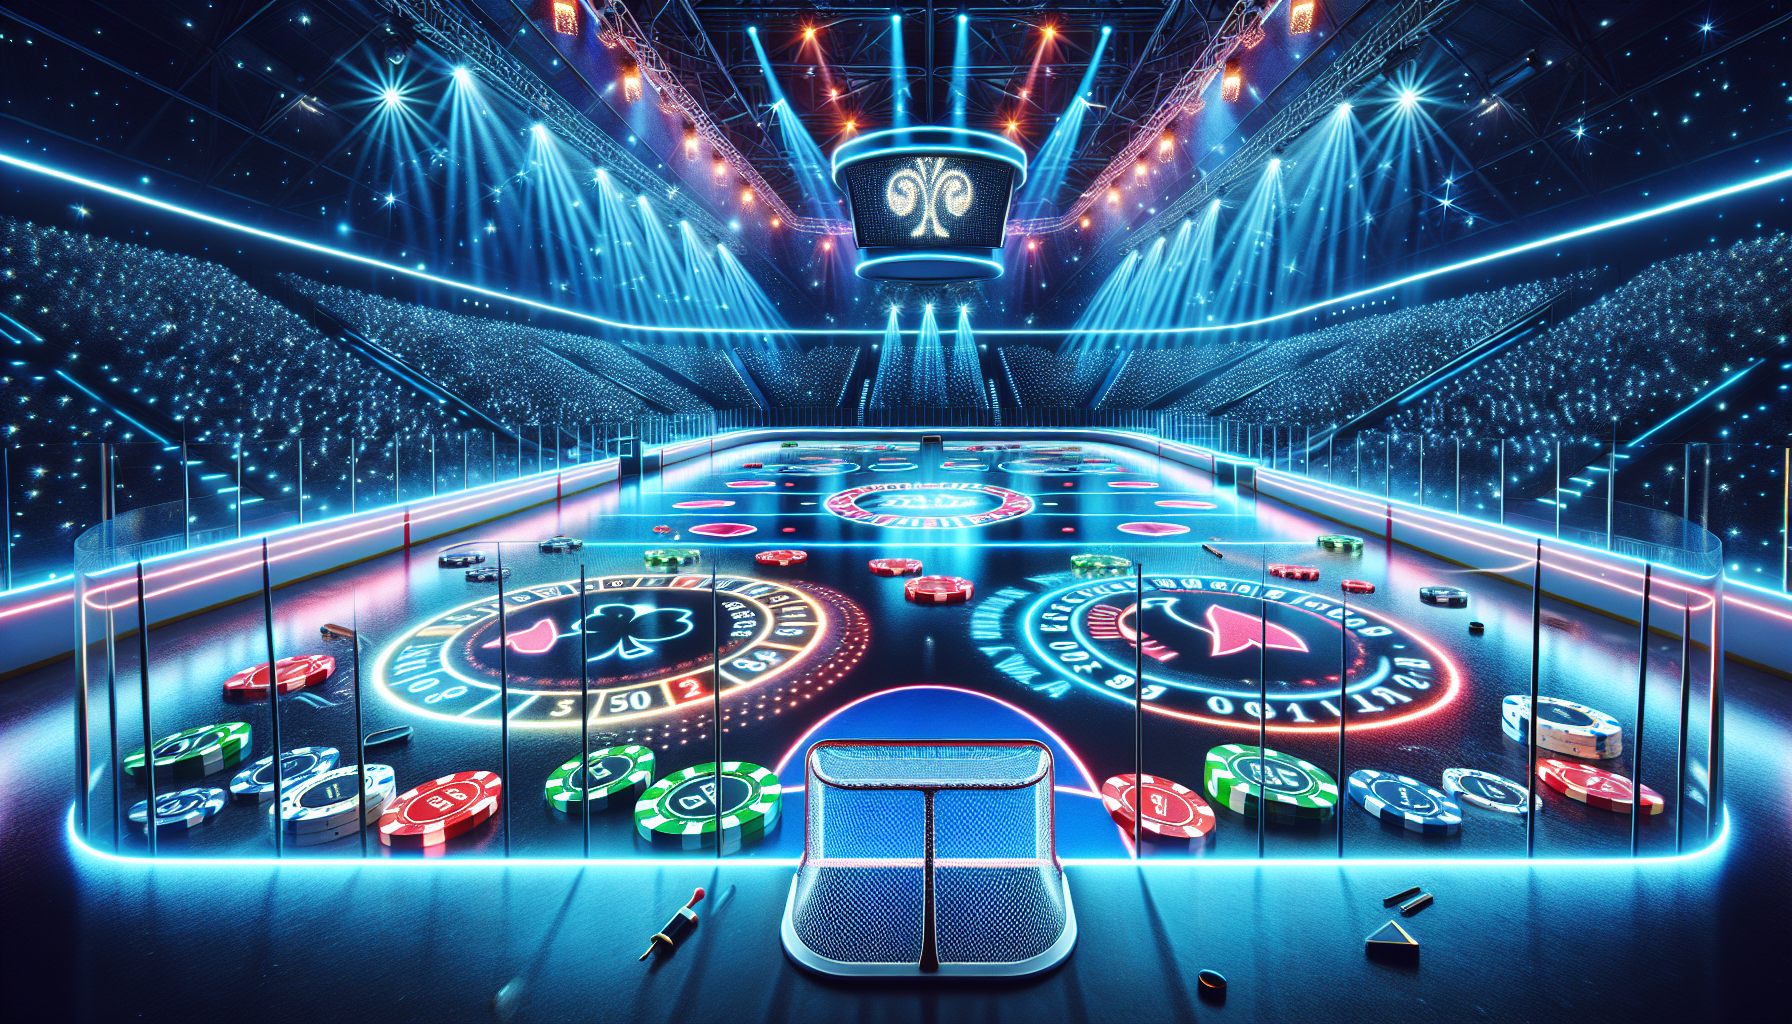 Murretaan jää: Analyysi historian menestyneimmistä NHL-joukkueista